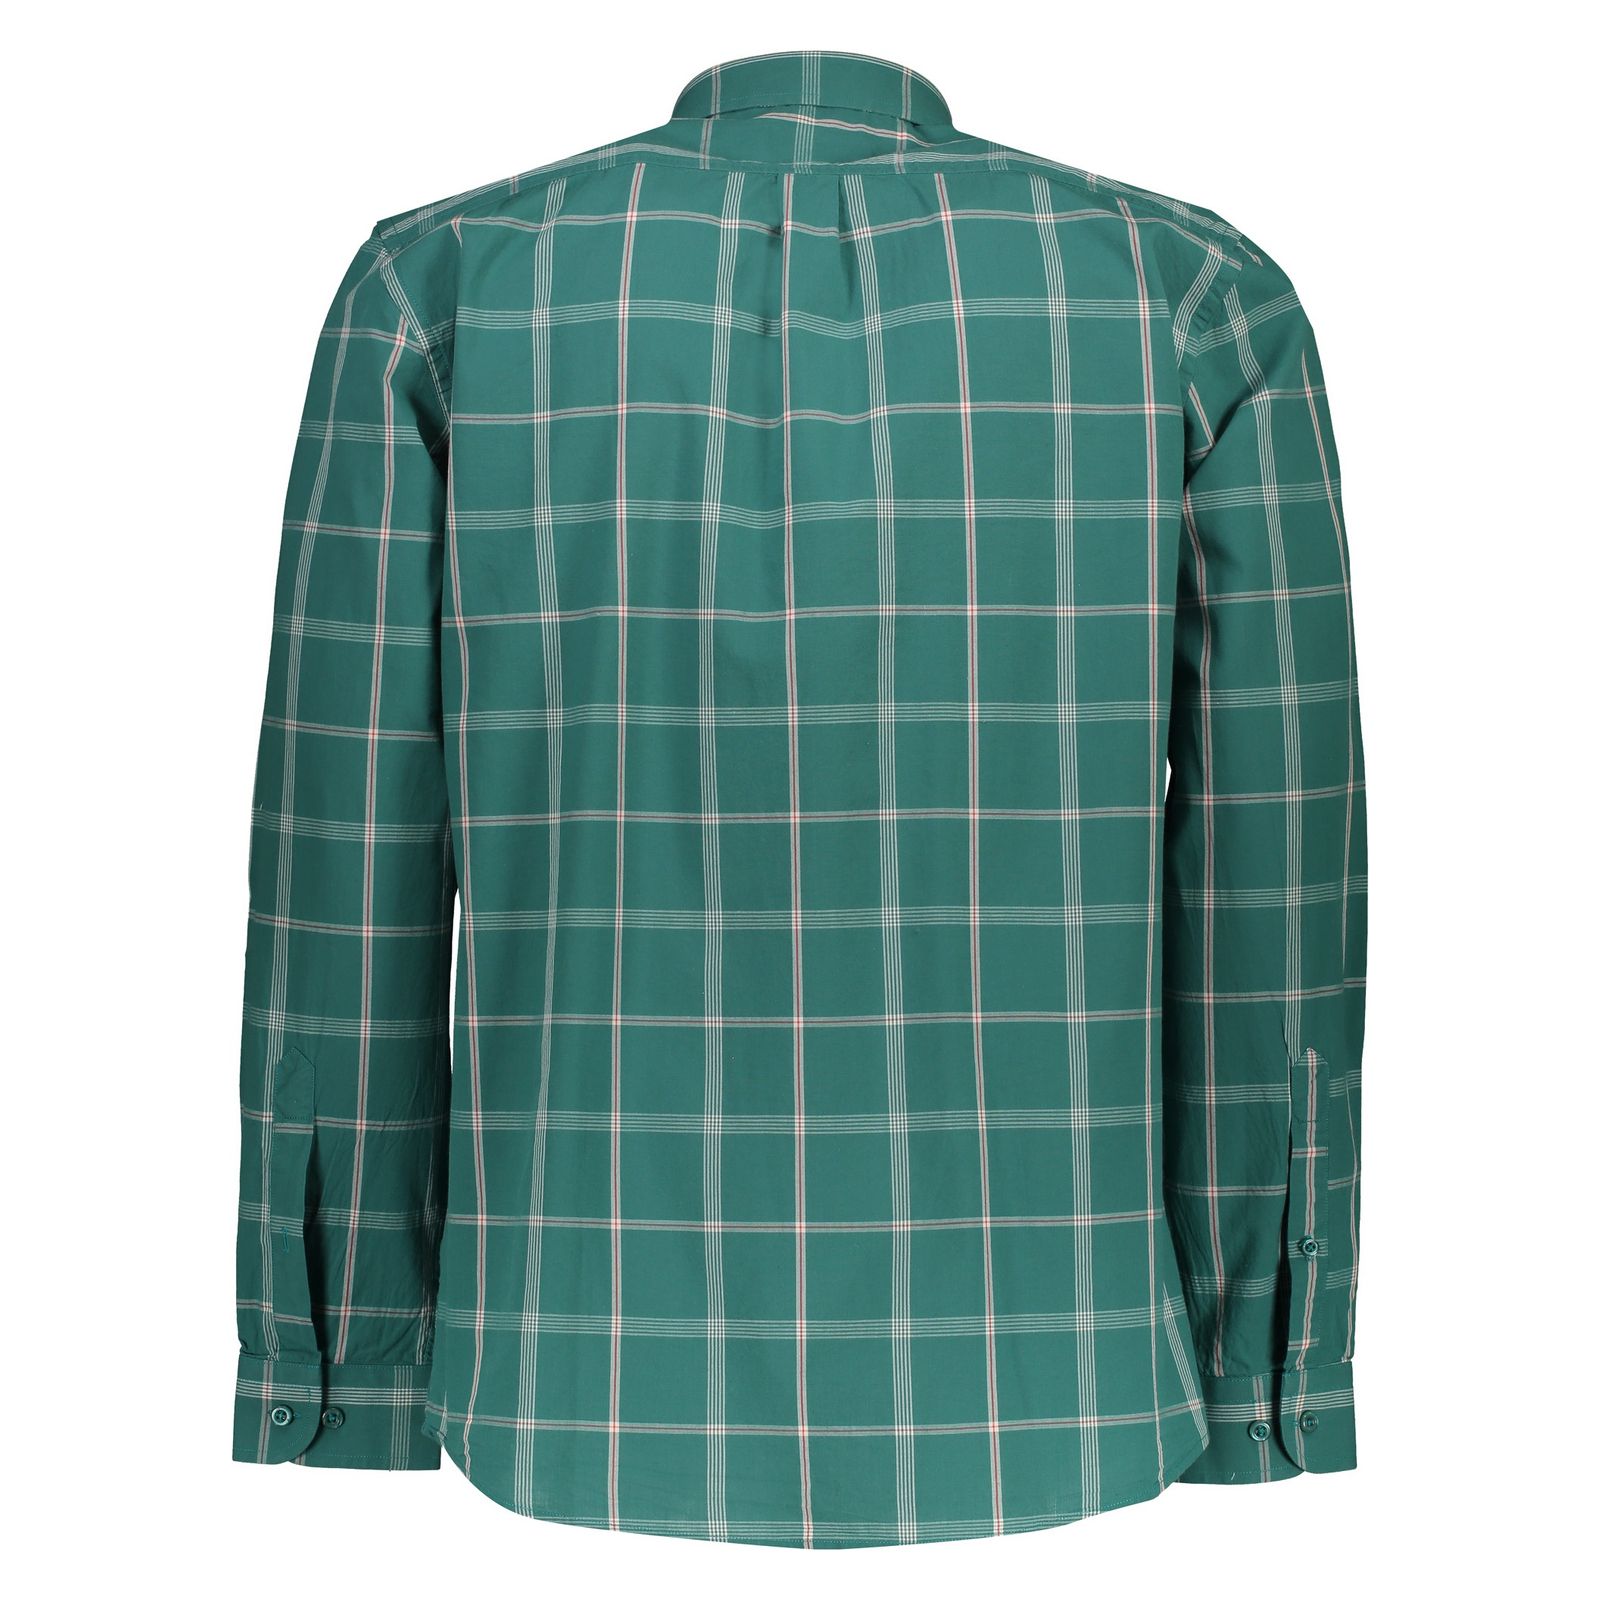 پیراهن مردانه لرد آرچر مدل 20011434501 - سبز سفید - 4